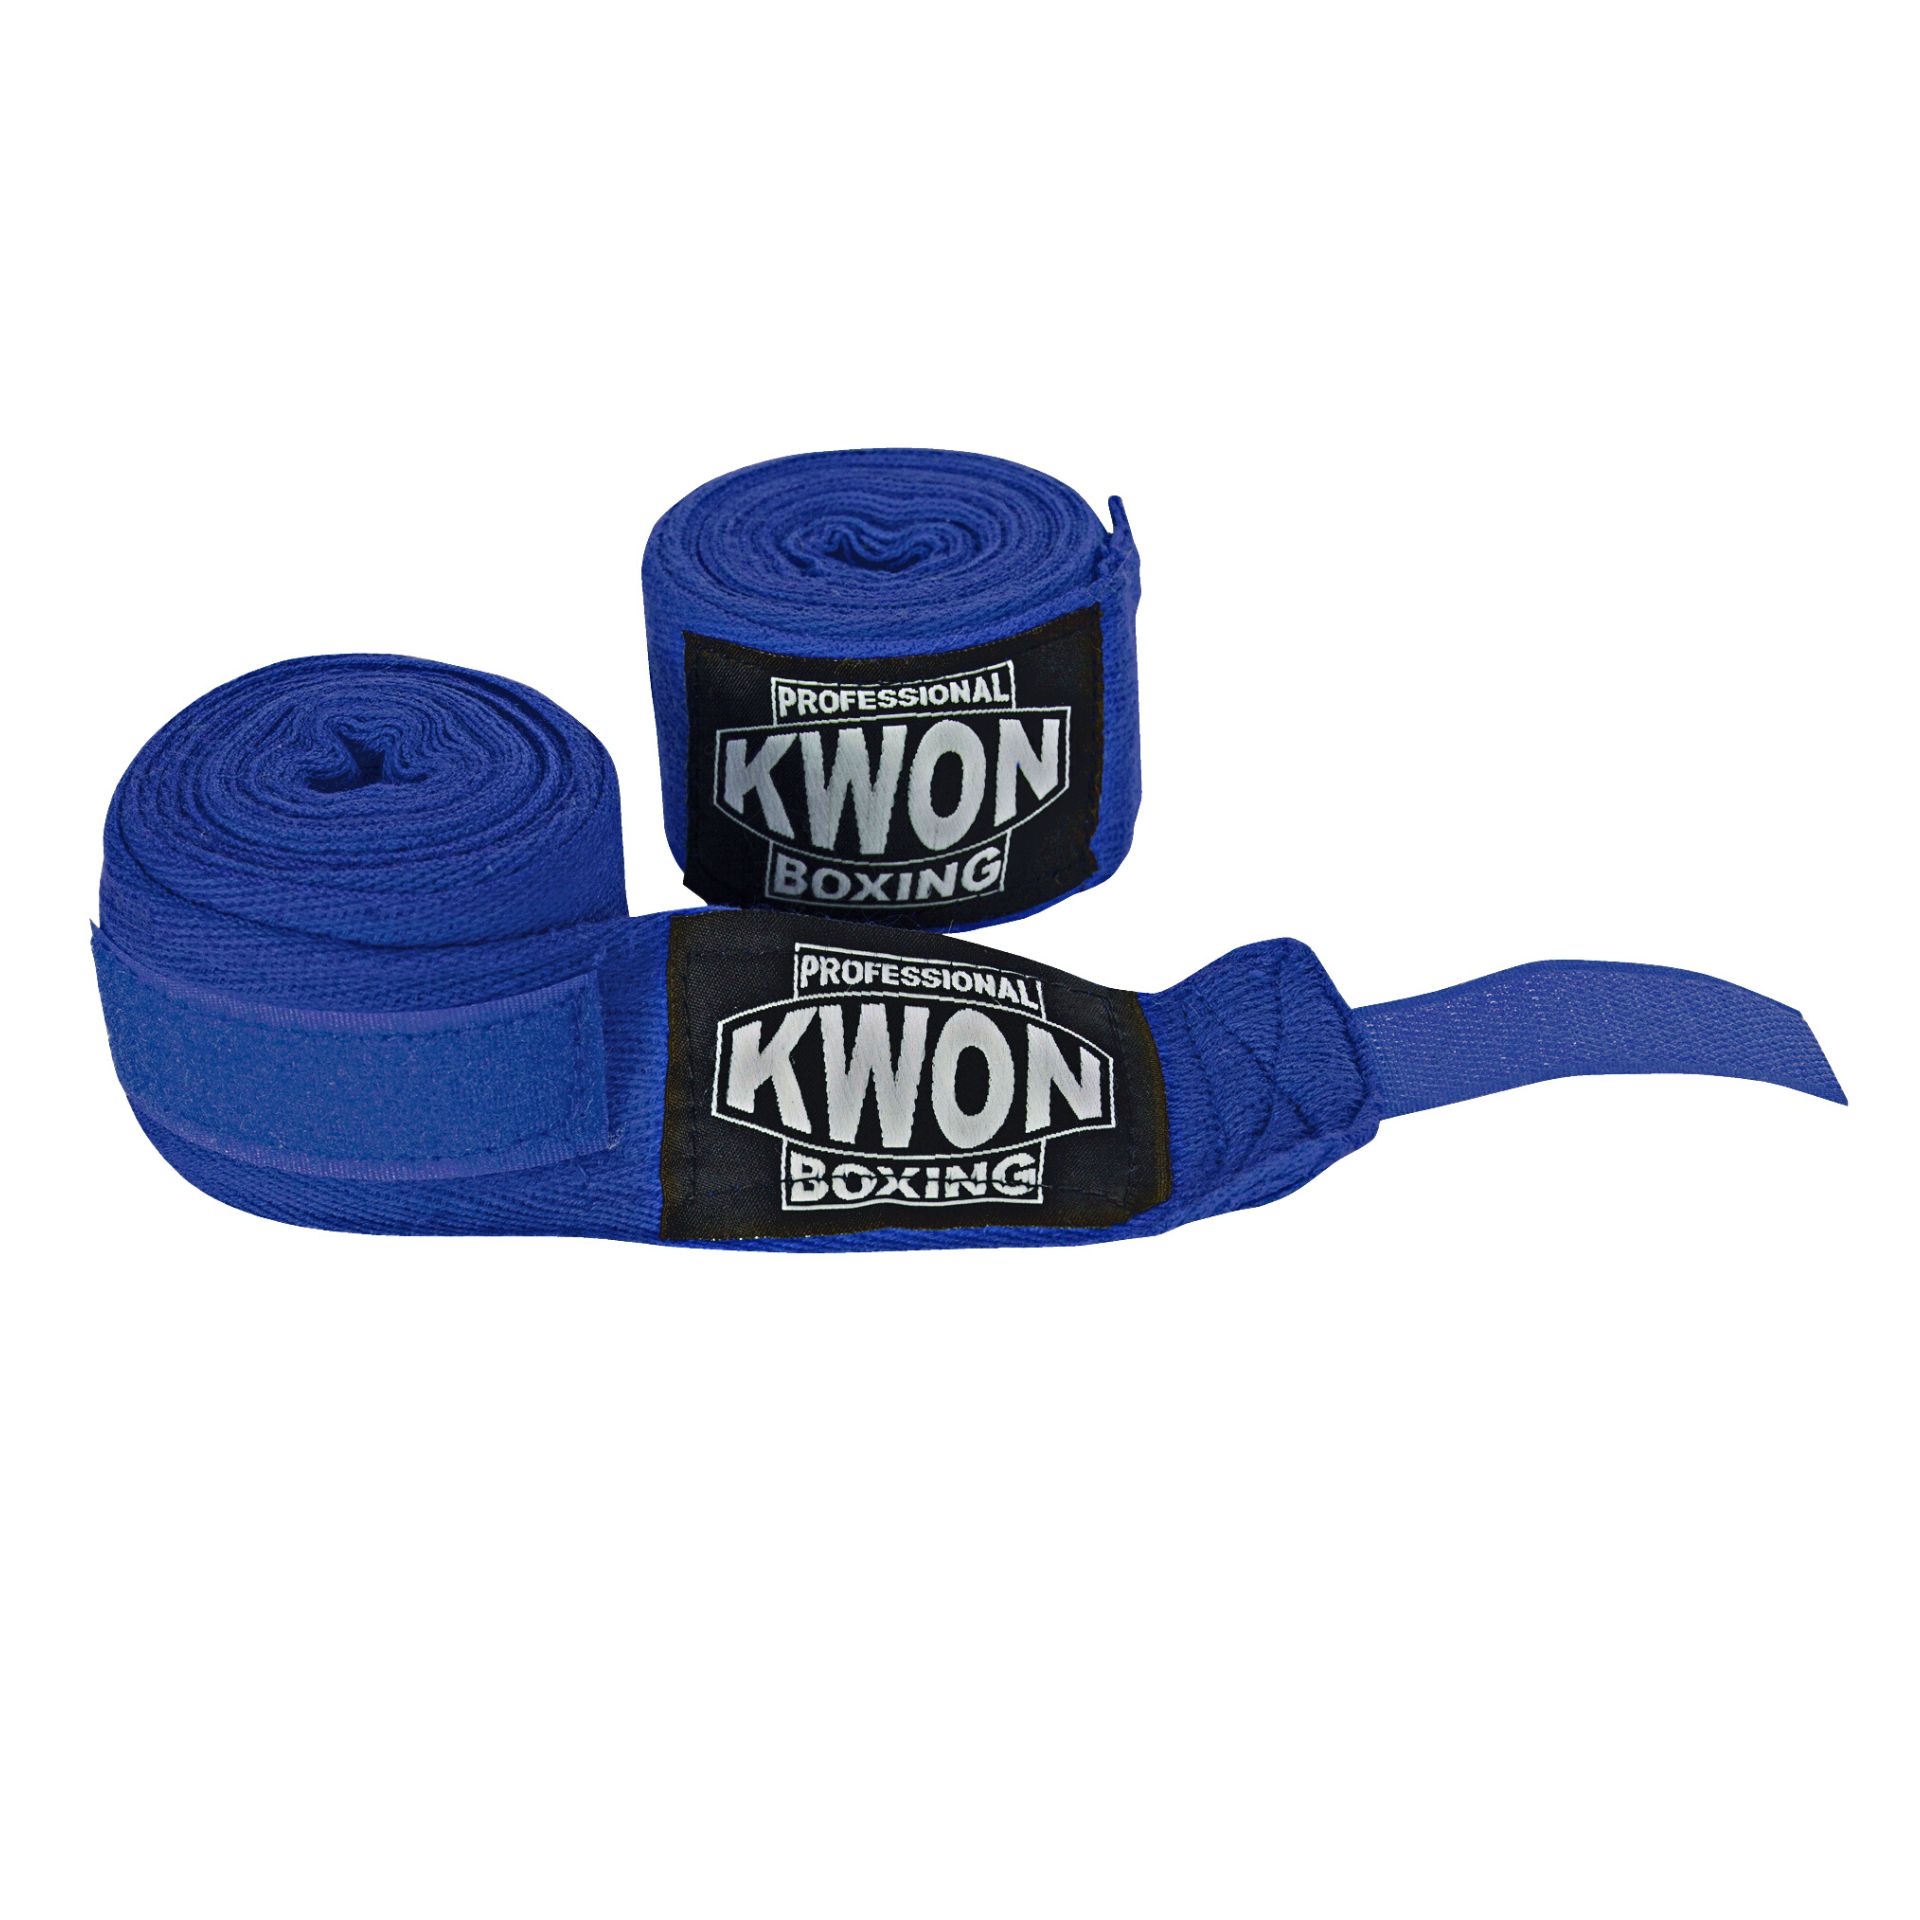 Boxbanadagen von KWON Professional Boxing günstig kaufen bei Boxen.de